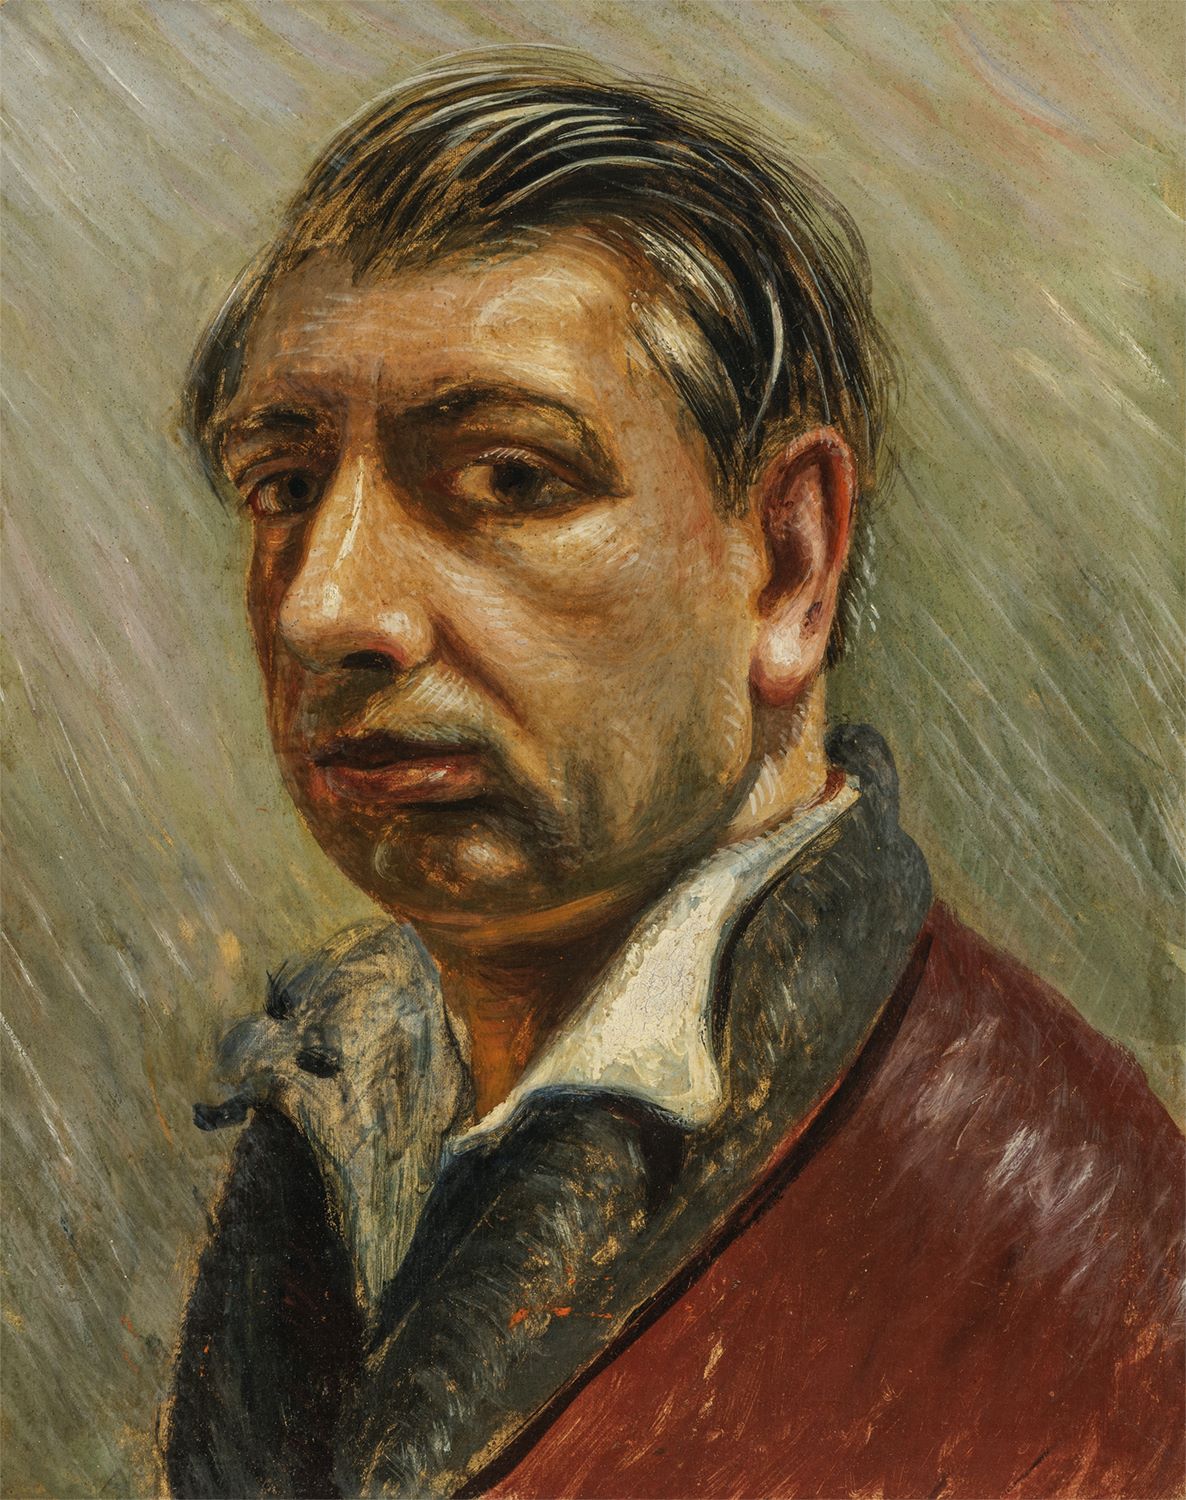 GIORGIO De Chirico, Self Portrait, 1929-1930, Oil on cardboard, 41 x 33 cm